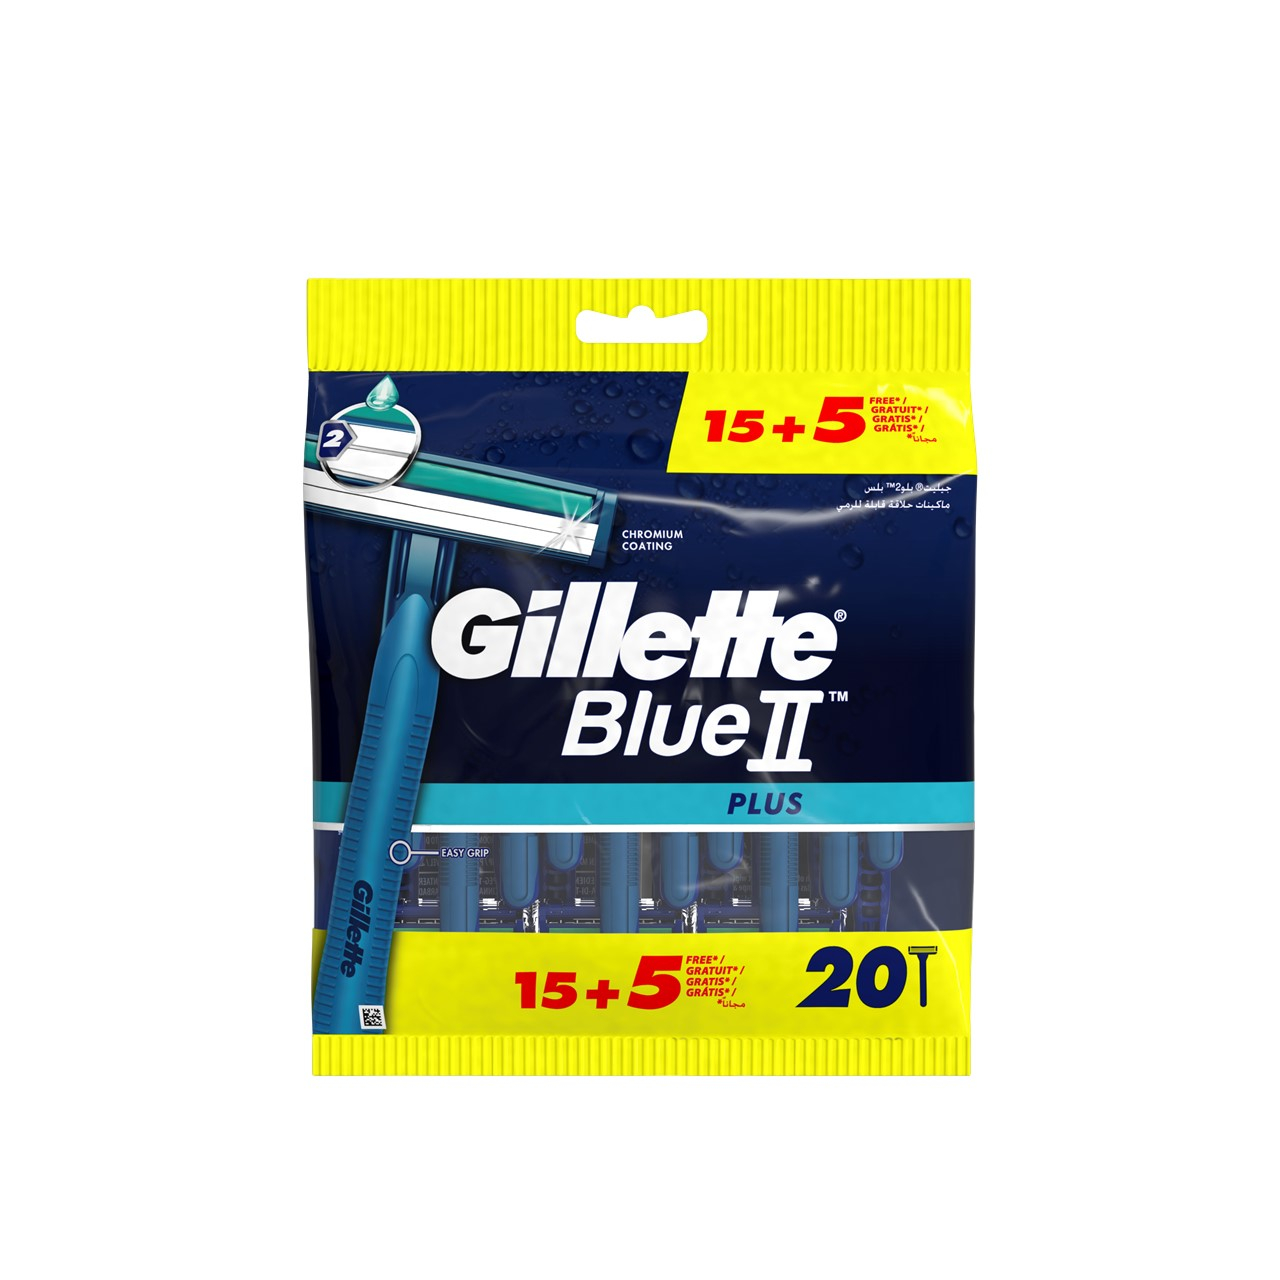 Gillette Blue II Plus Disposable Razors